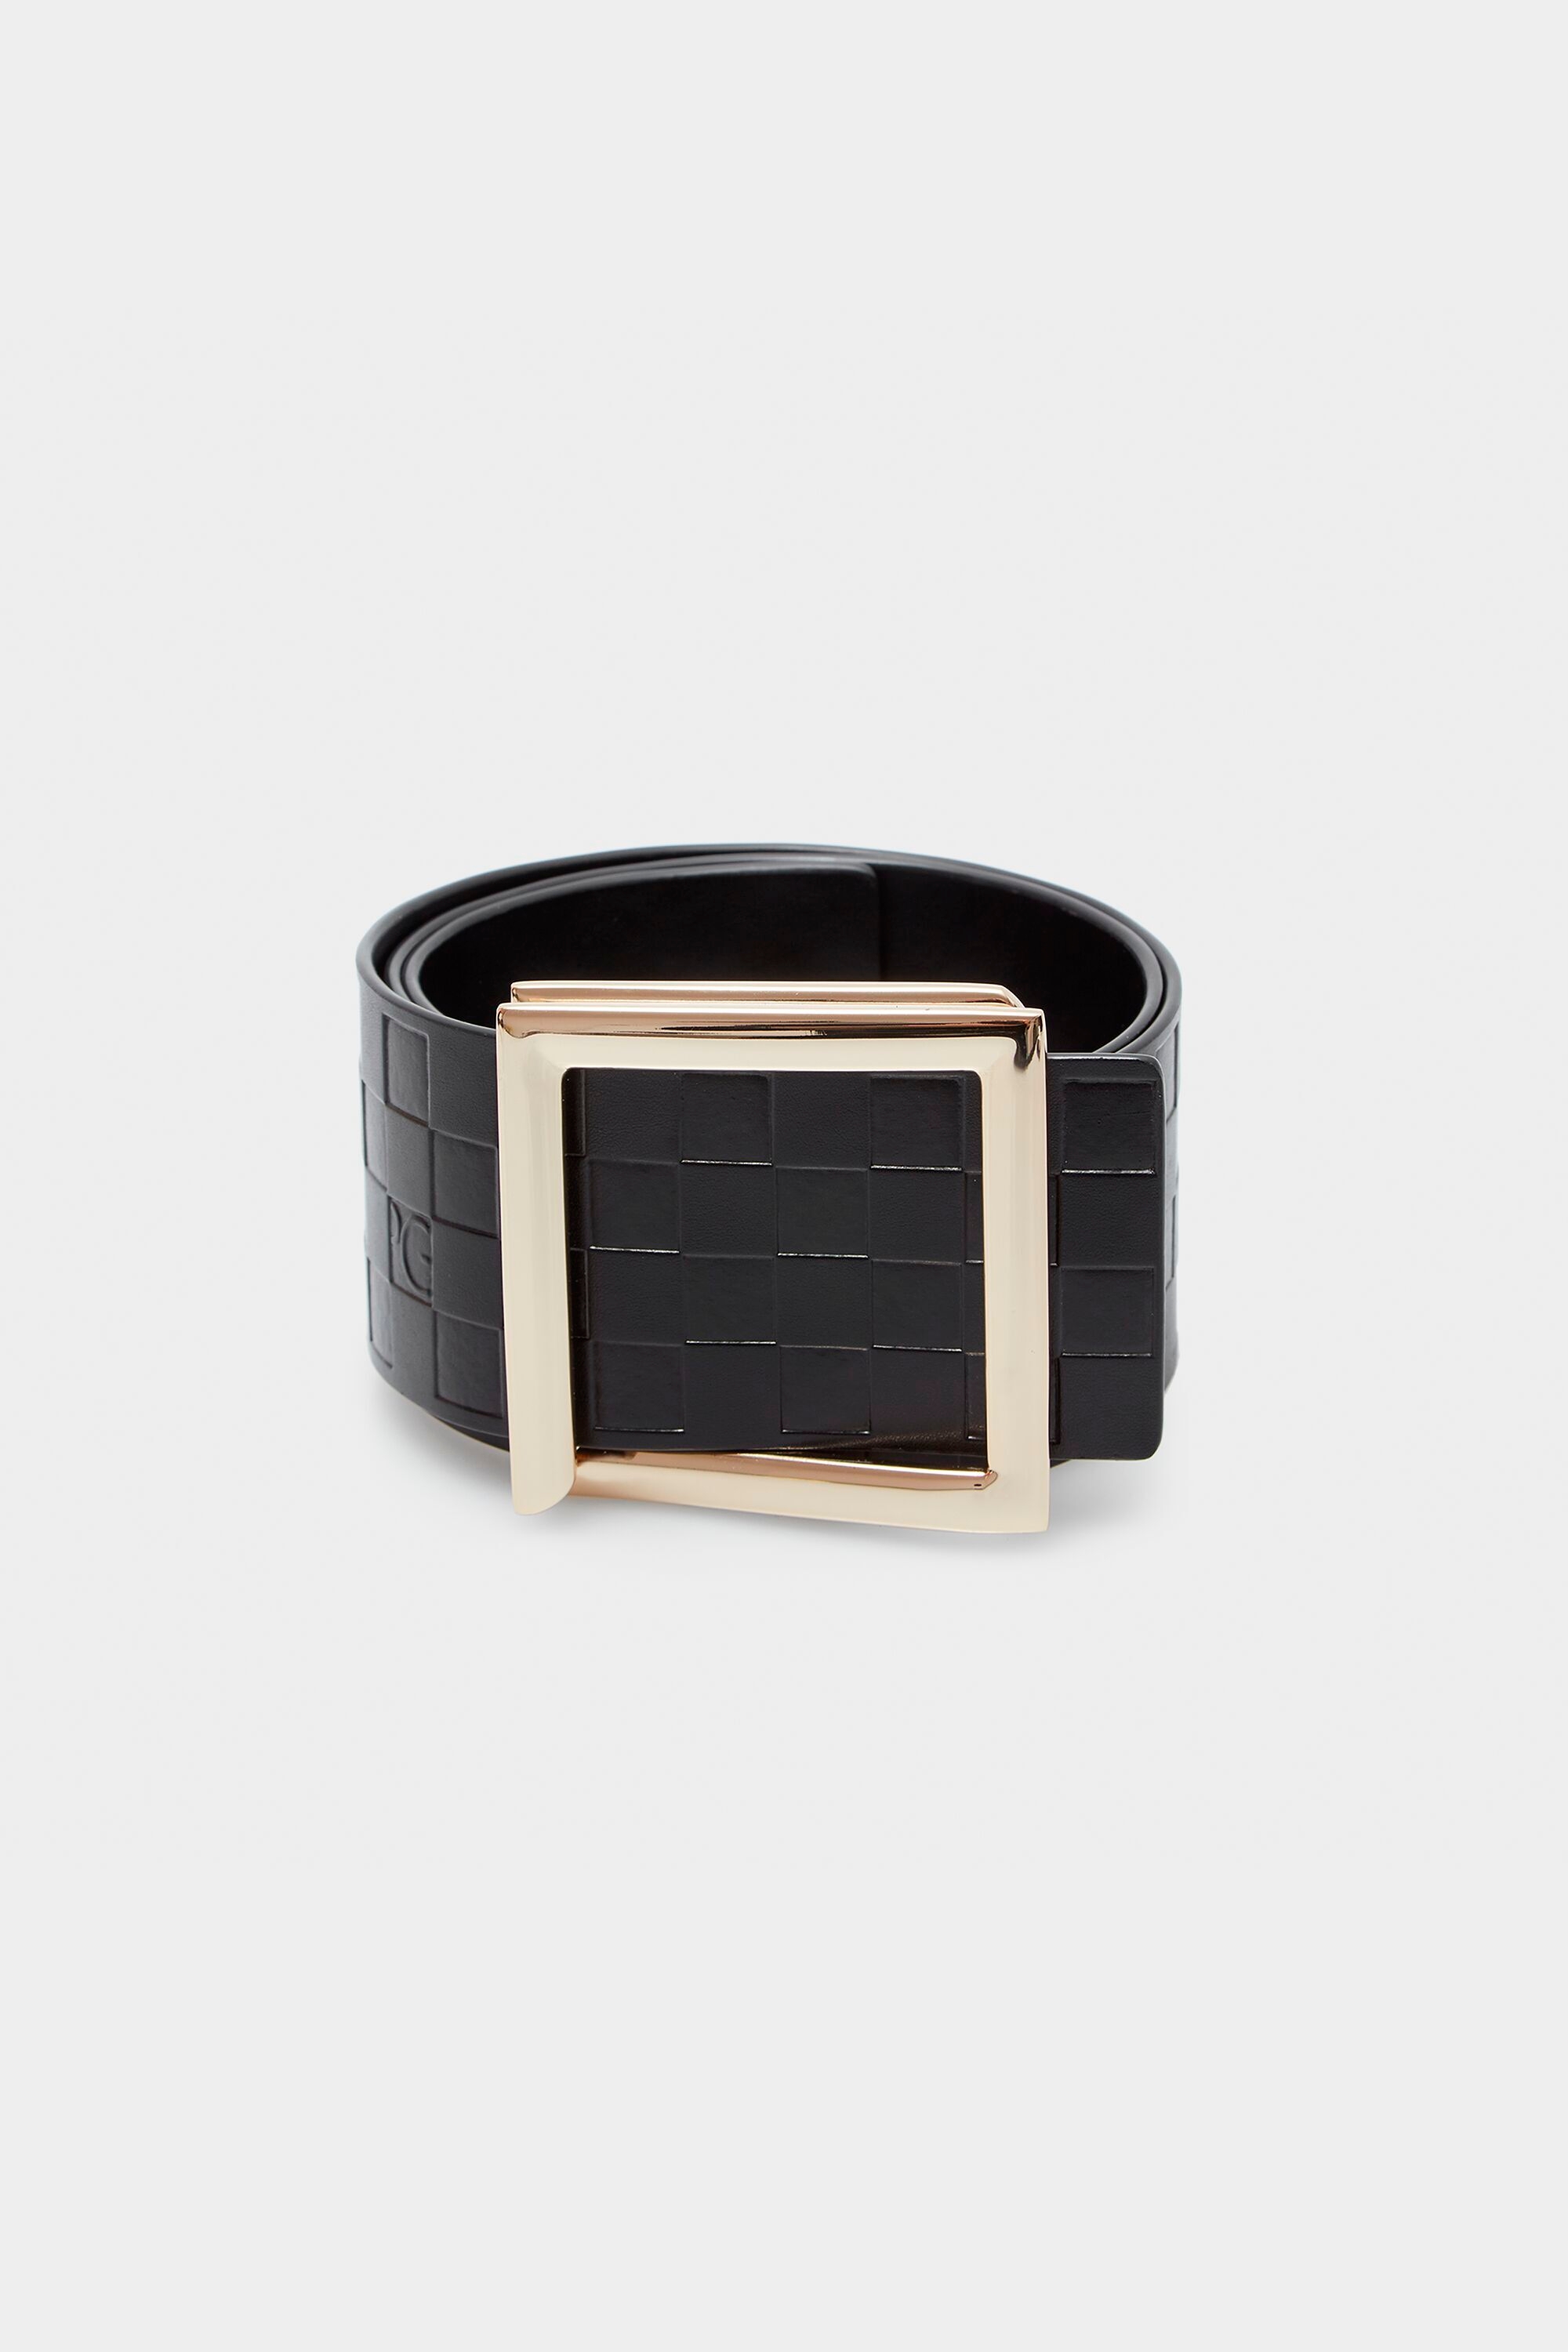 Cubes block leather belt